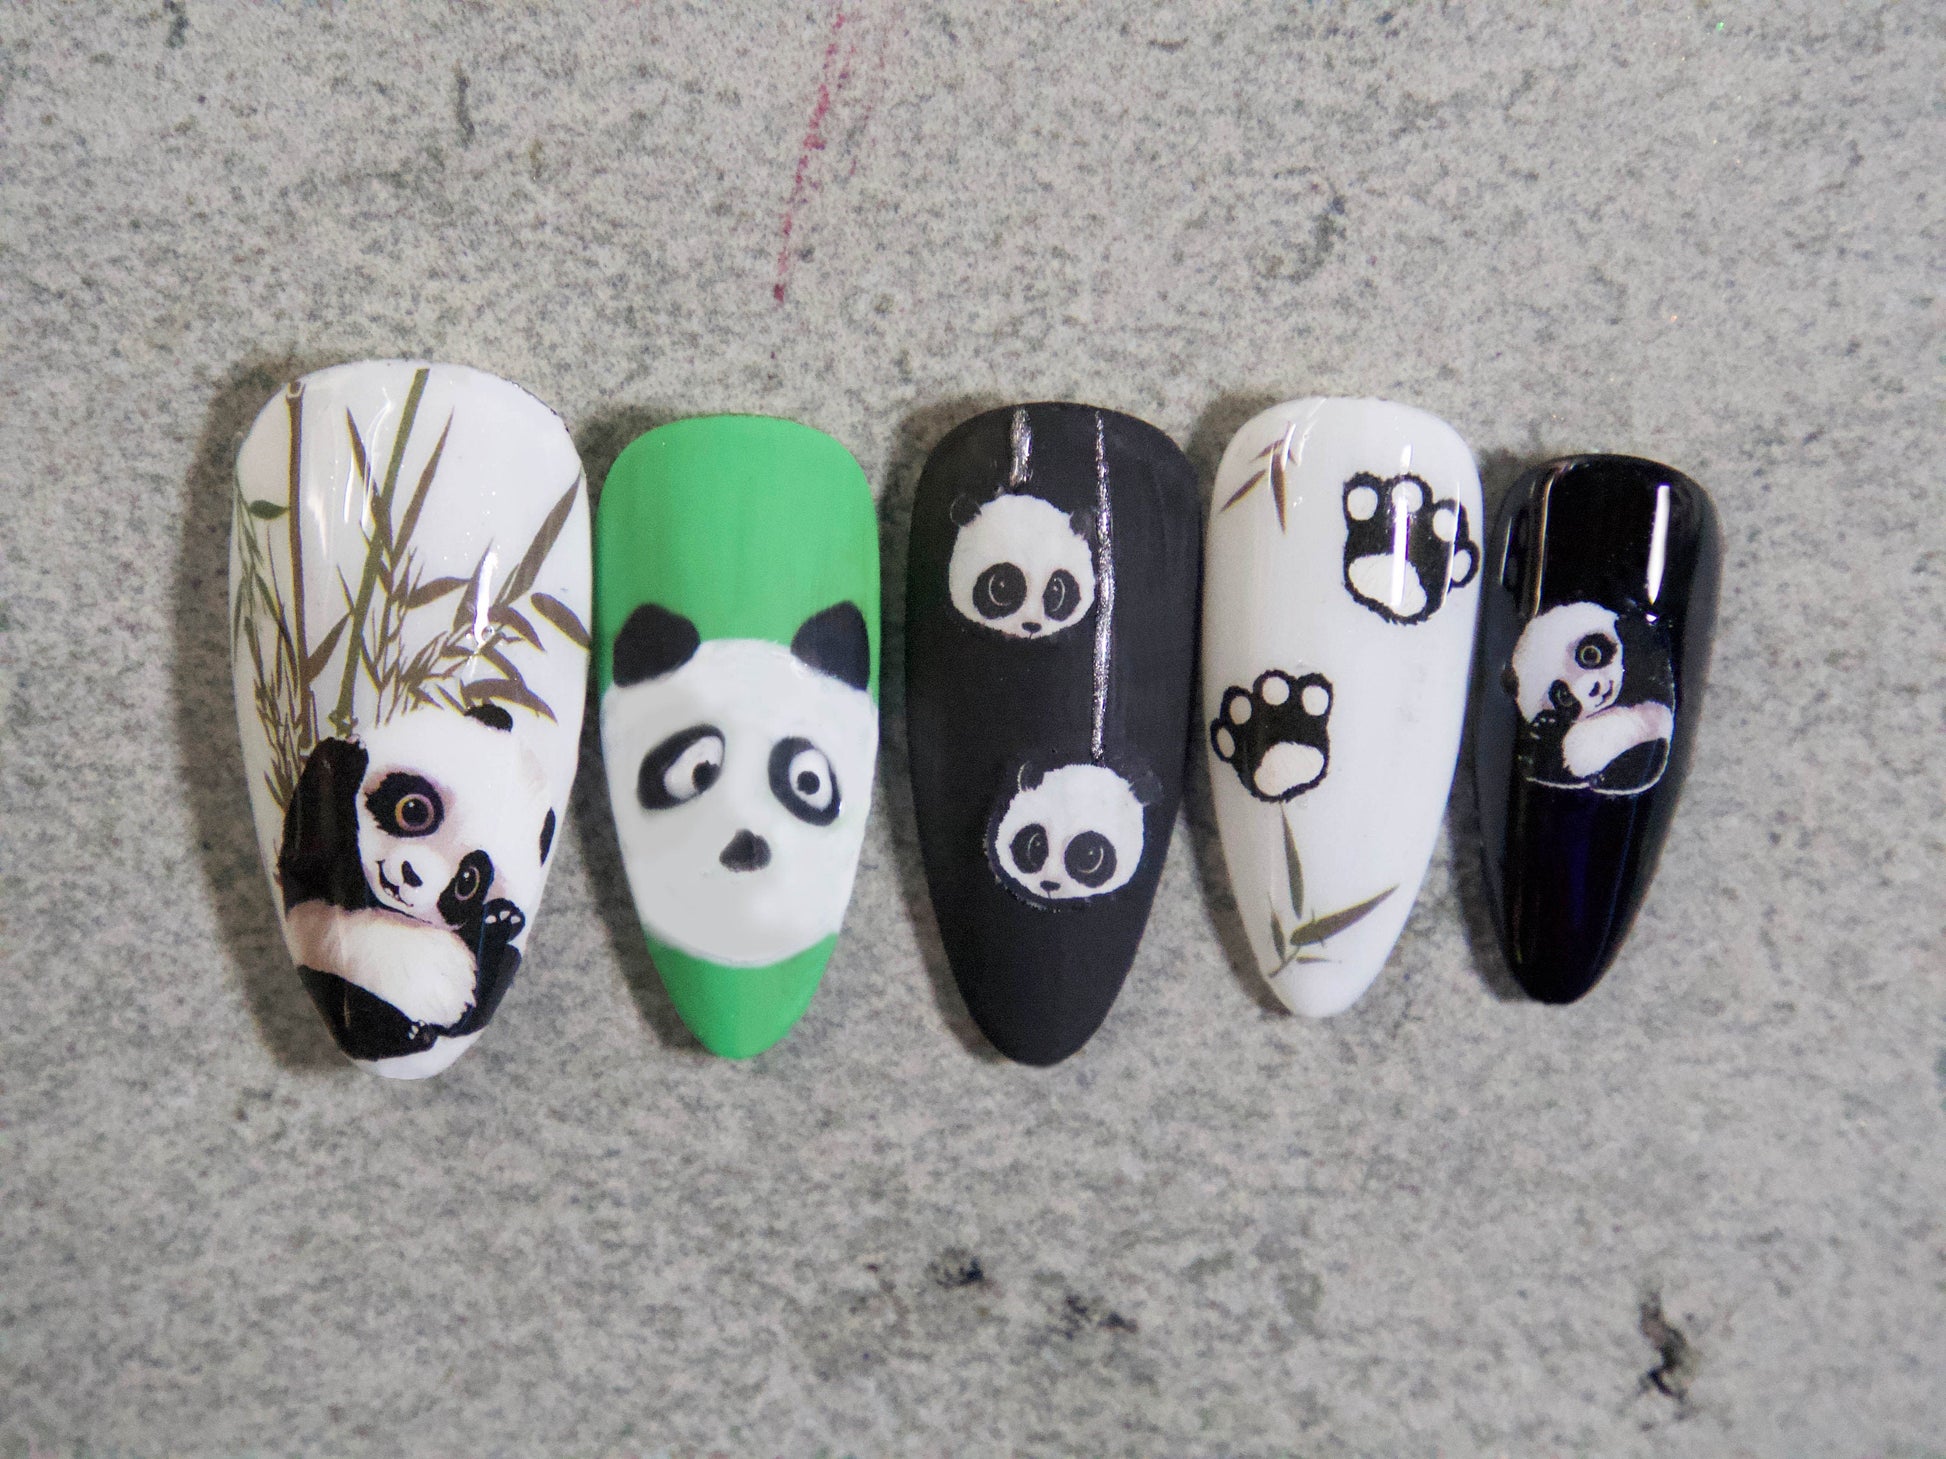 Panda Bamboo nail sticker/ Cute China Panda 1 Sheet 3D Nail Art Stickers Self Adhesive Decals/ Panda Nail Appliques